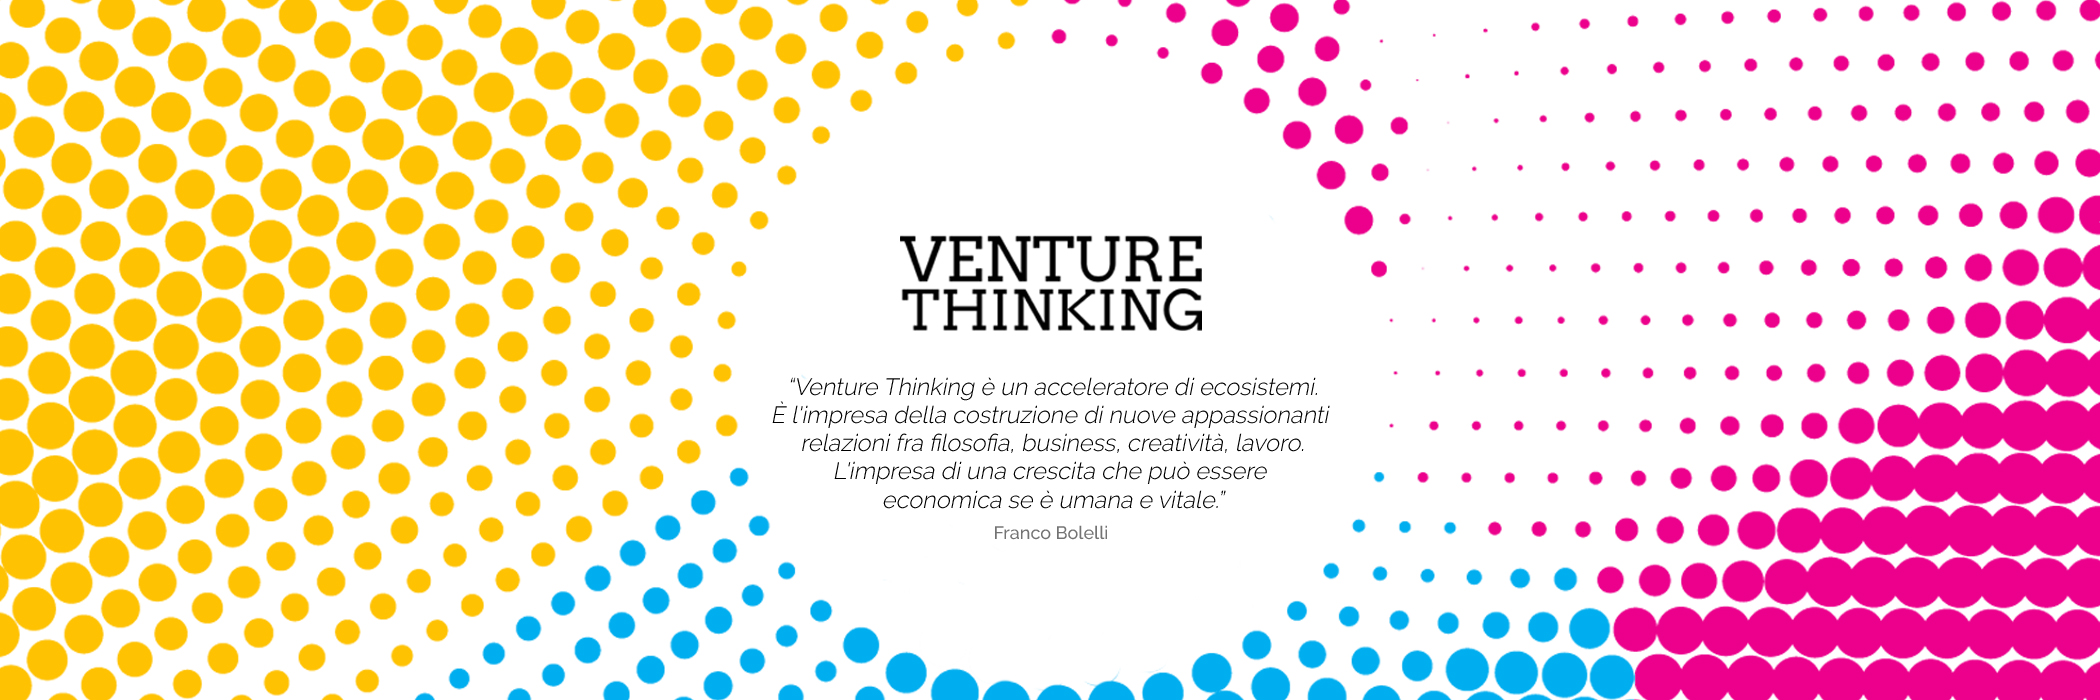 venture_thinking banner